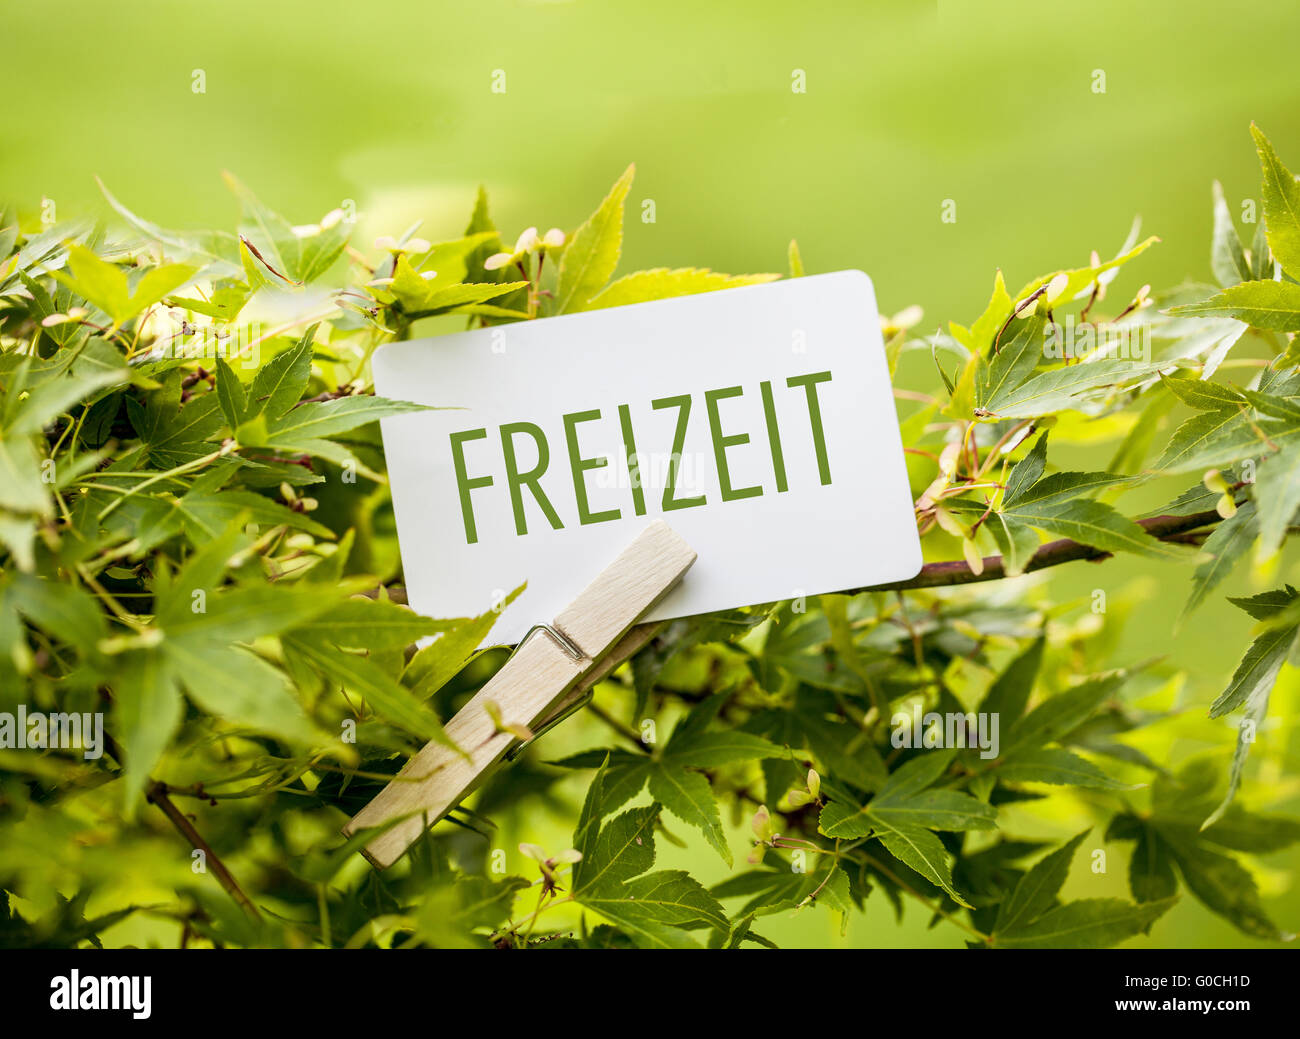 The Word  “Freizeit“ in a fan-maple tree Stock Photo